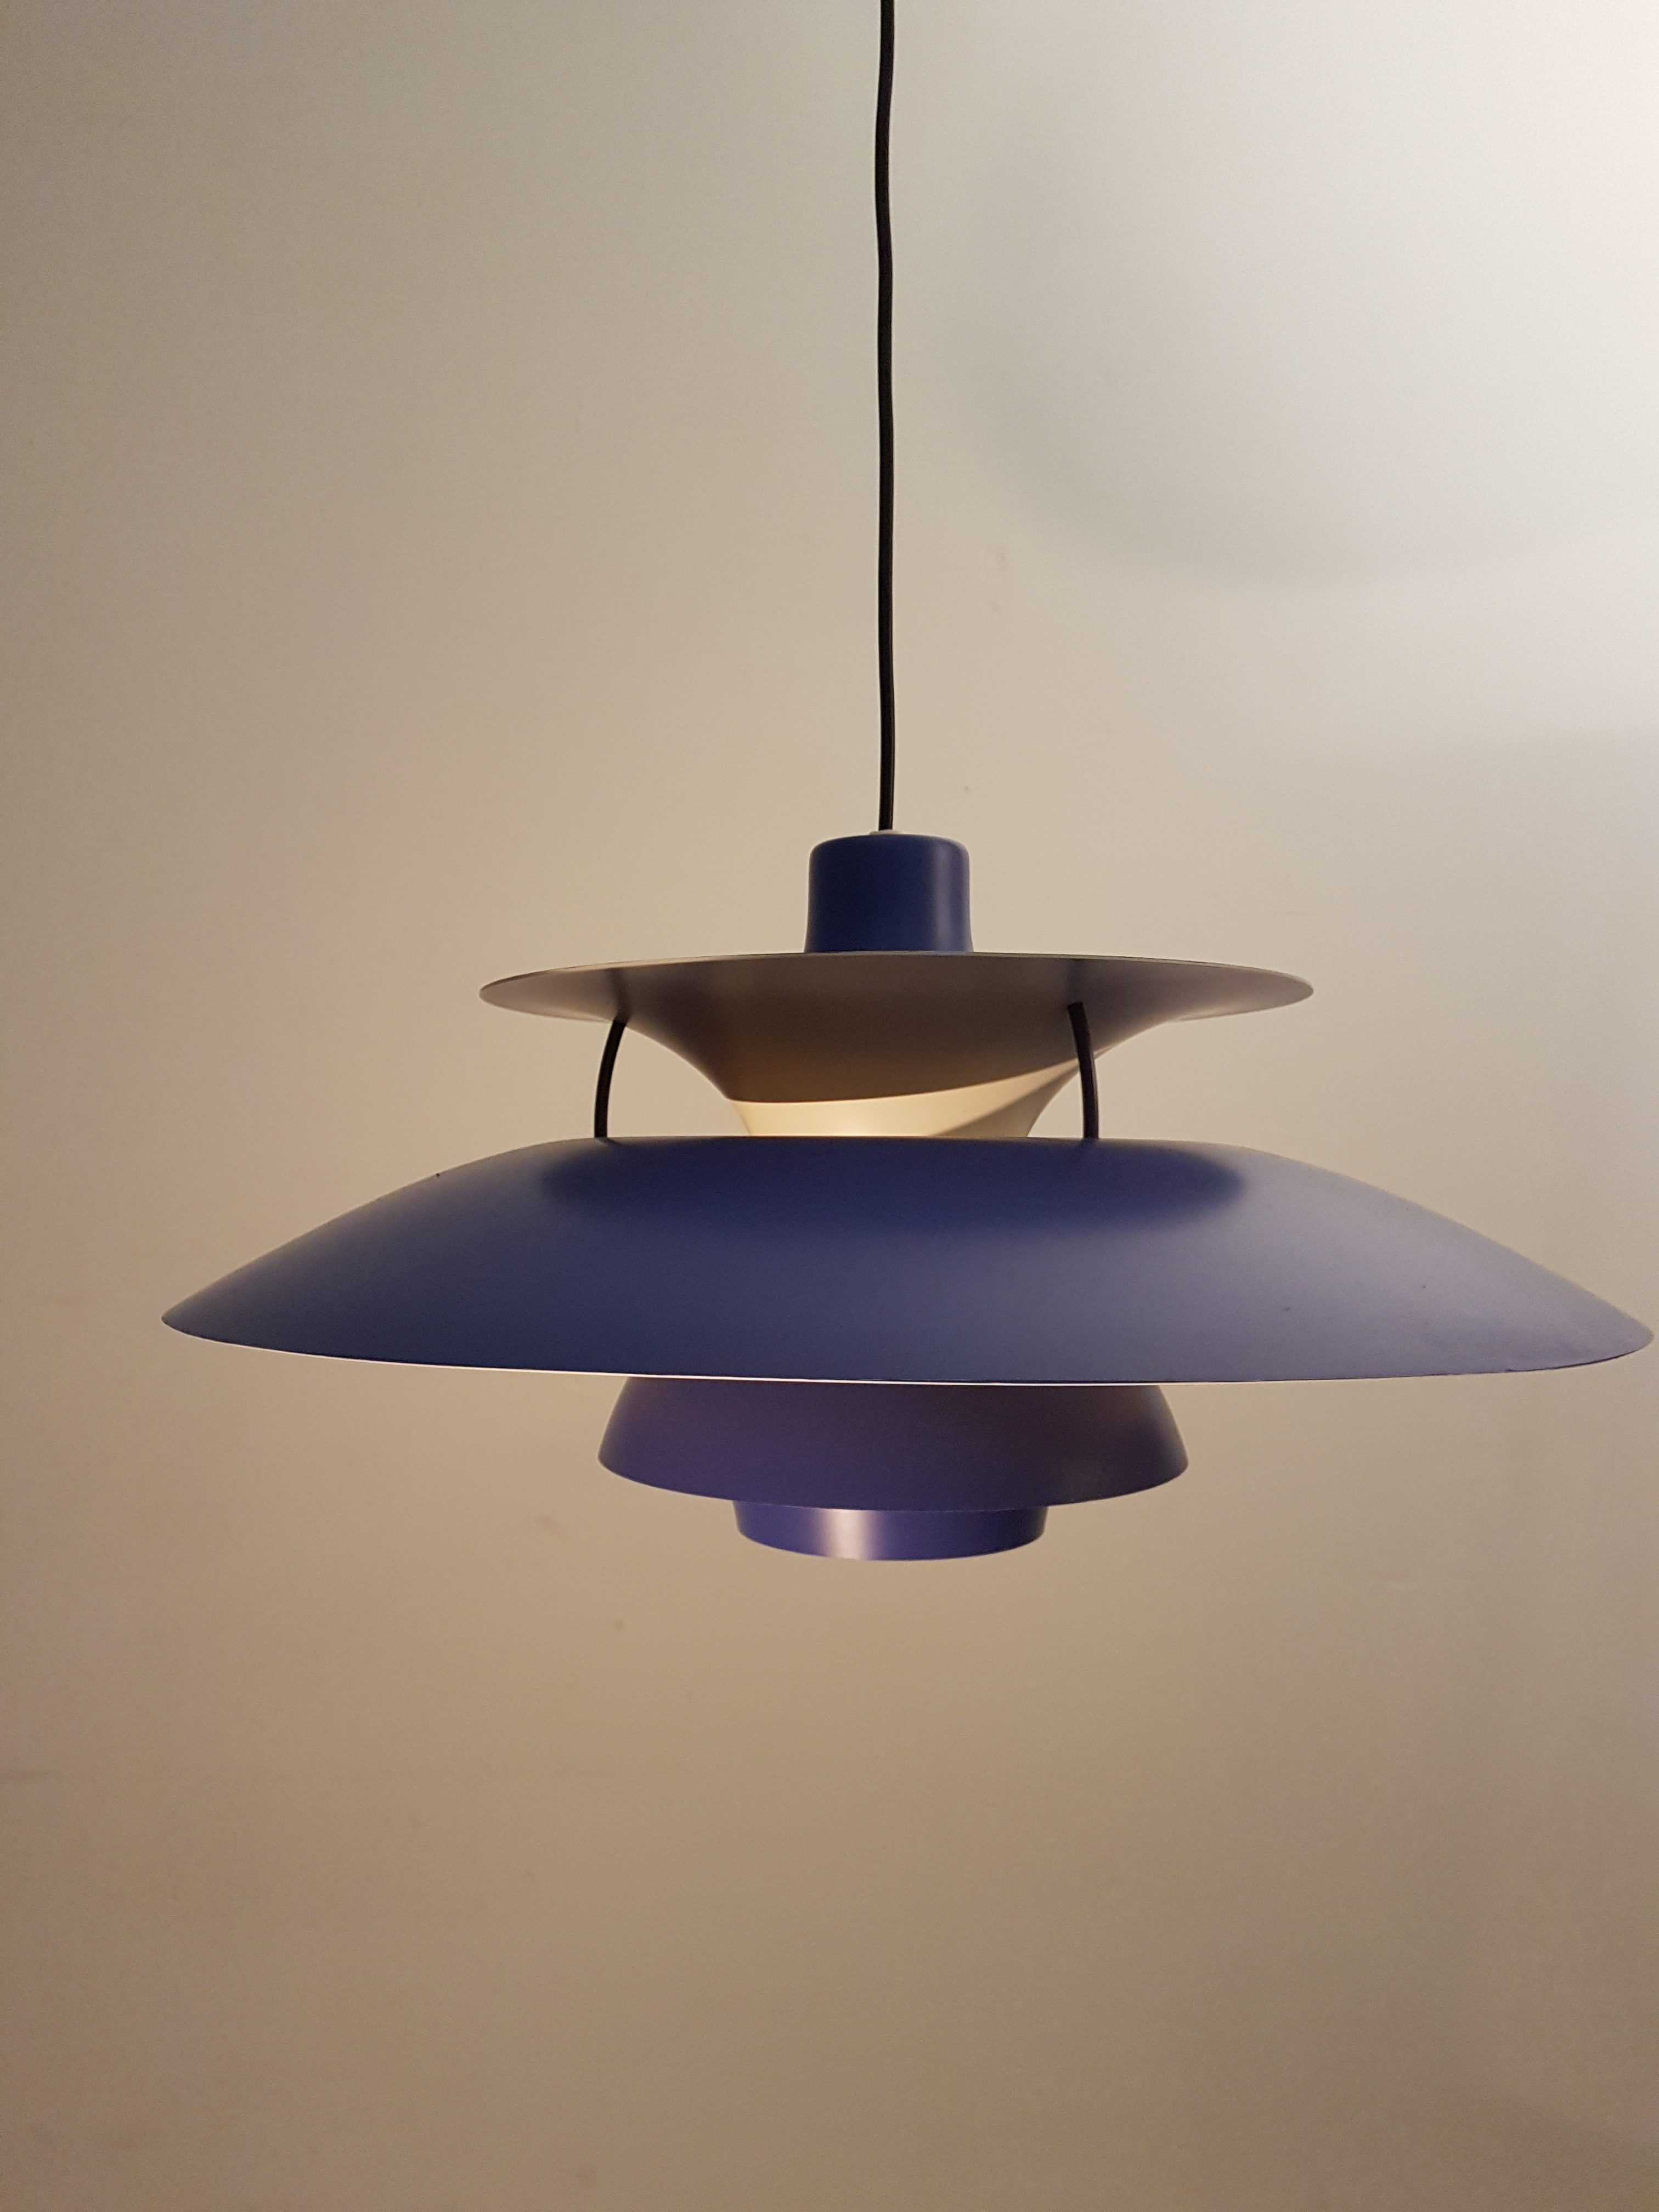 Vintage PH 5 pendant lamp by Poul Henningsen for Louis Poulsen